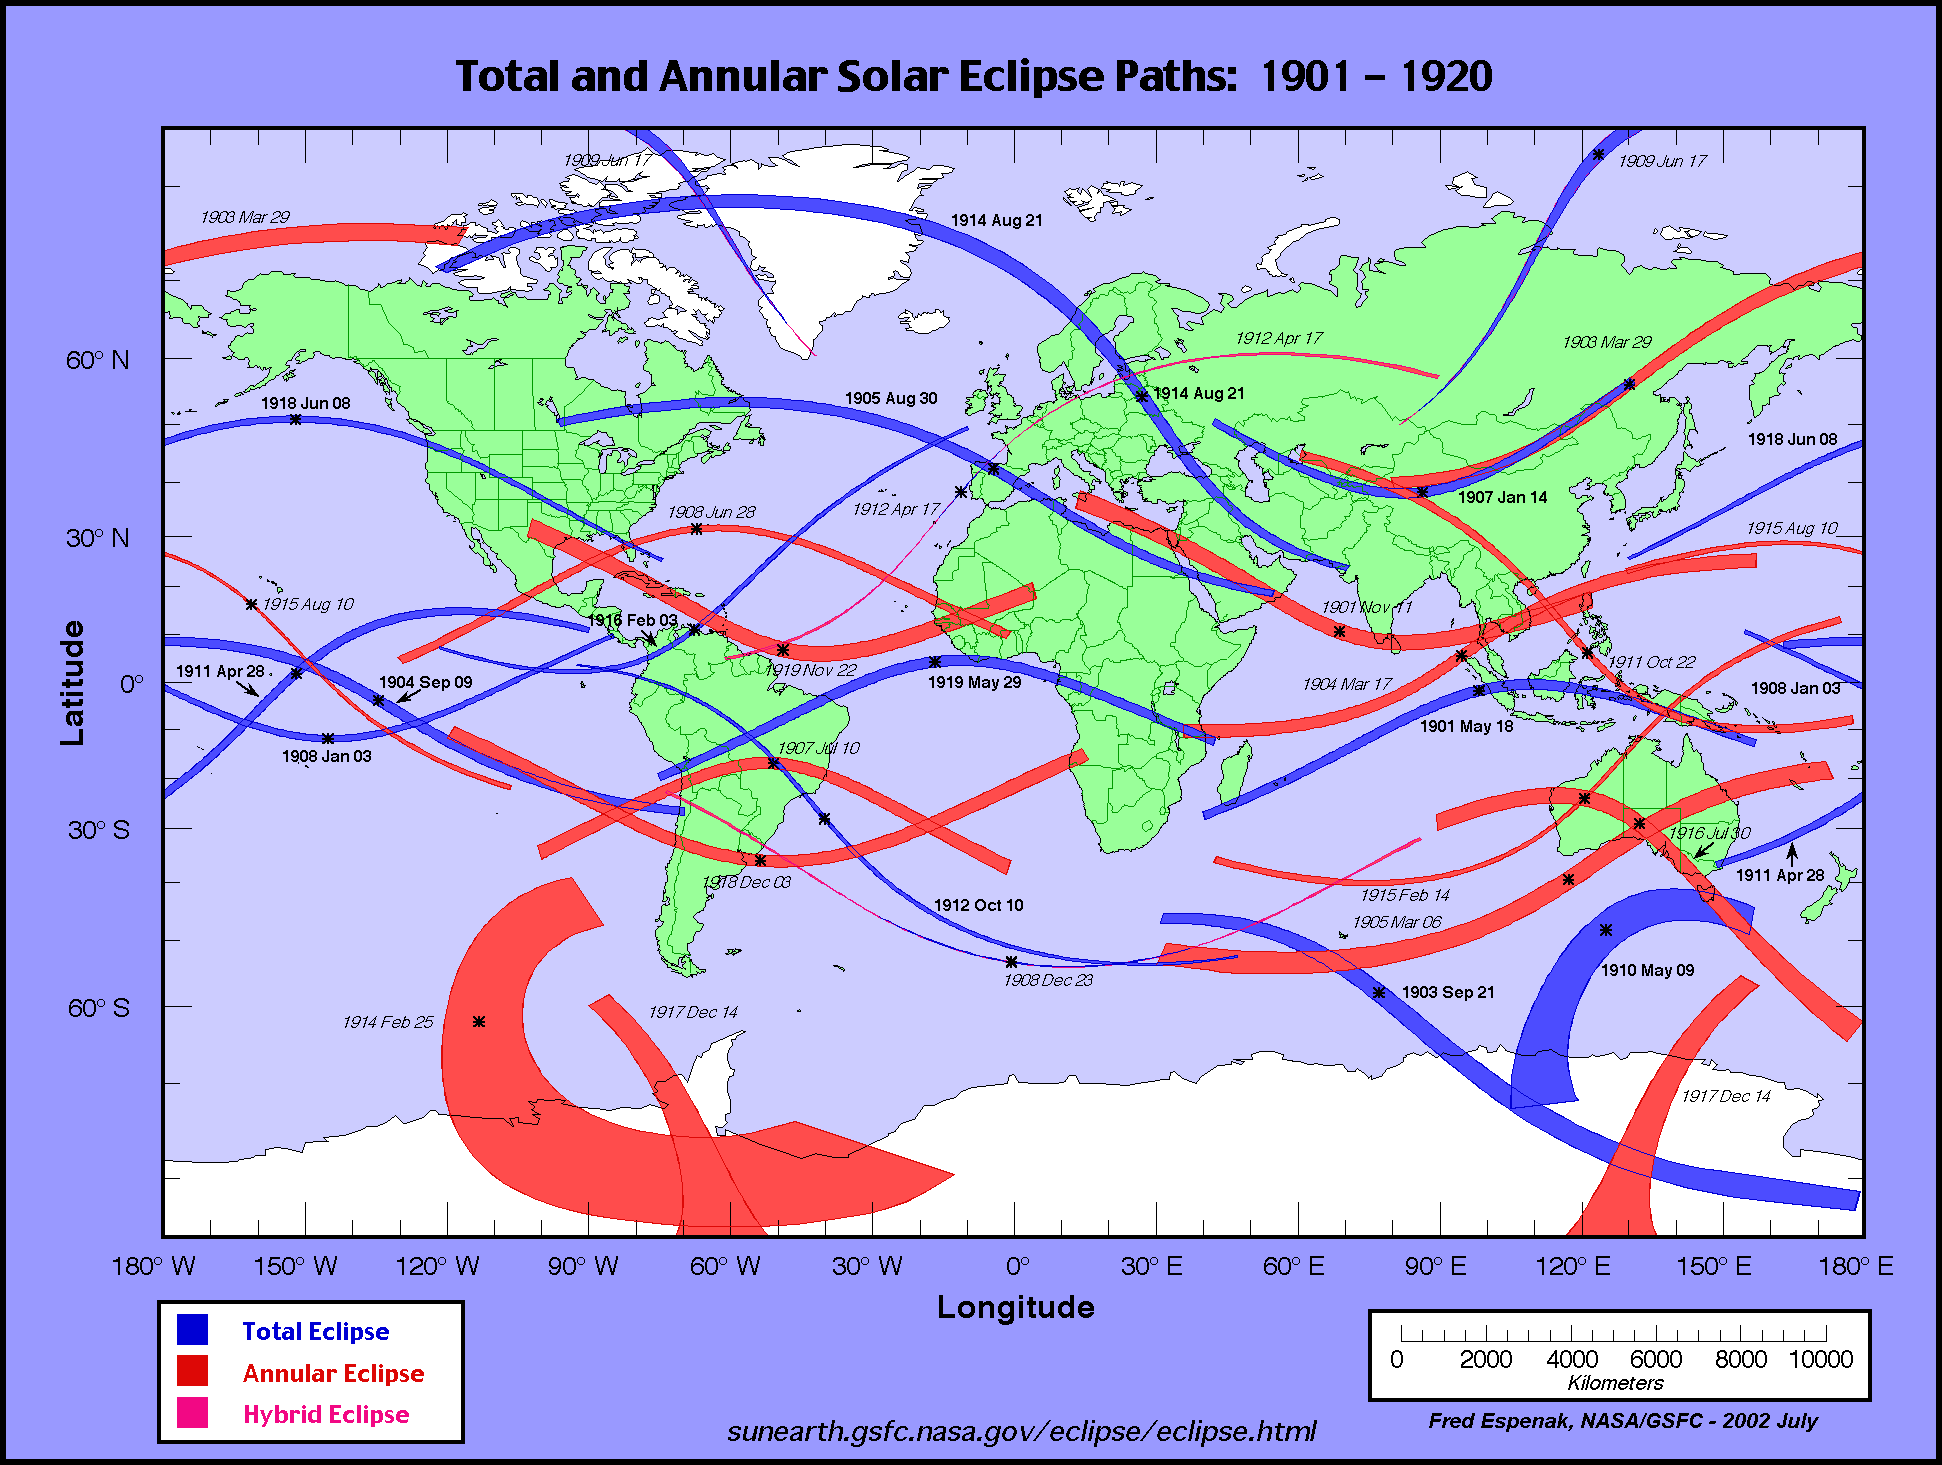 calendario e mappe eclissi solari totali e anulari dal 1901 al 1920